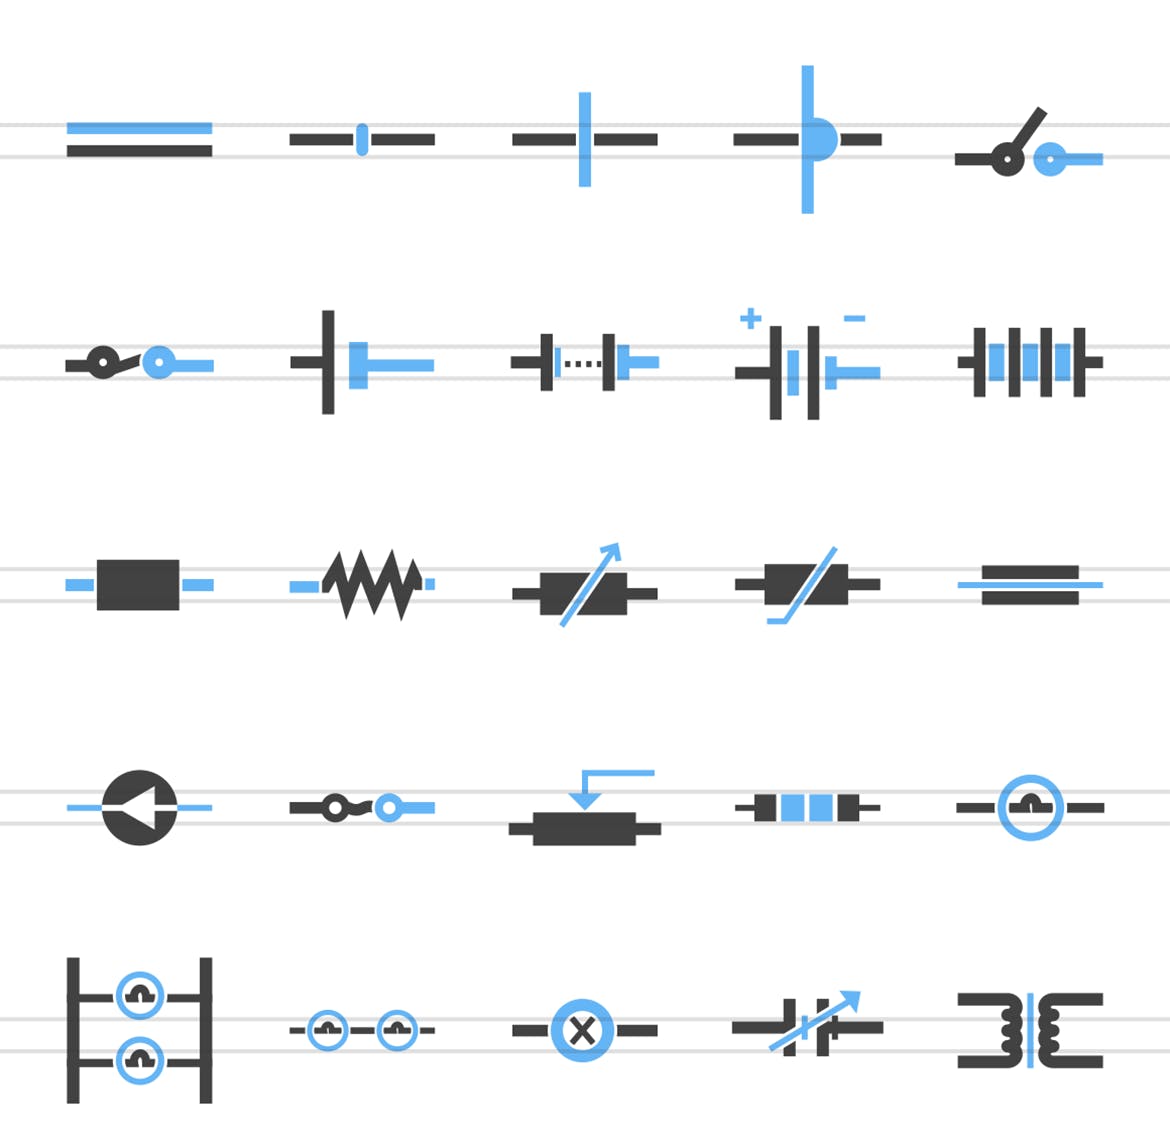 50枚电路线路板主题蓝黑色矢量第一素材精选图标 50 Electric Circuits Blue & Black Icons插图(1)